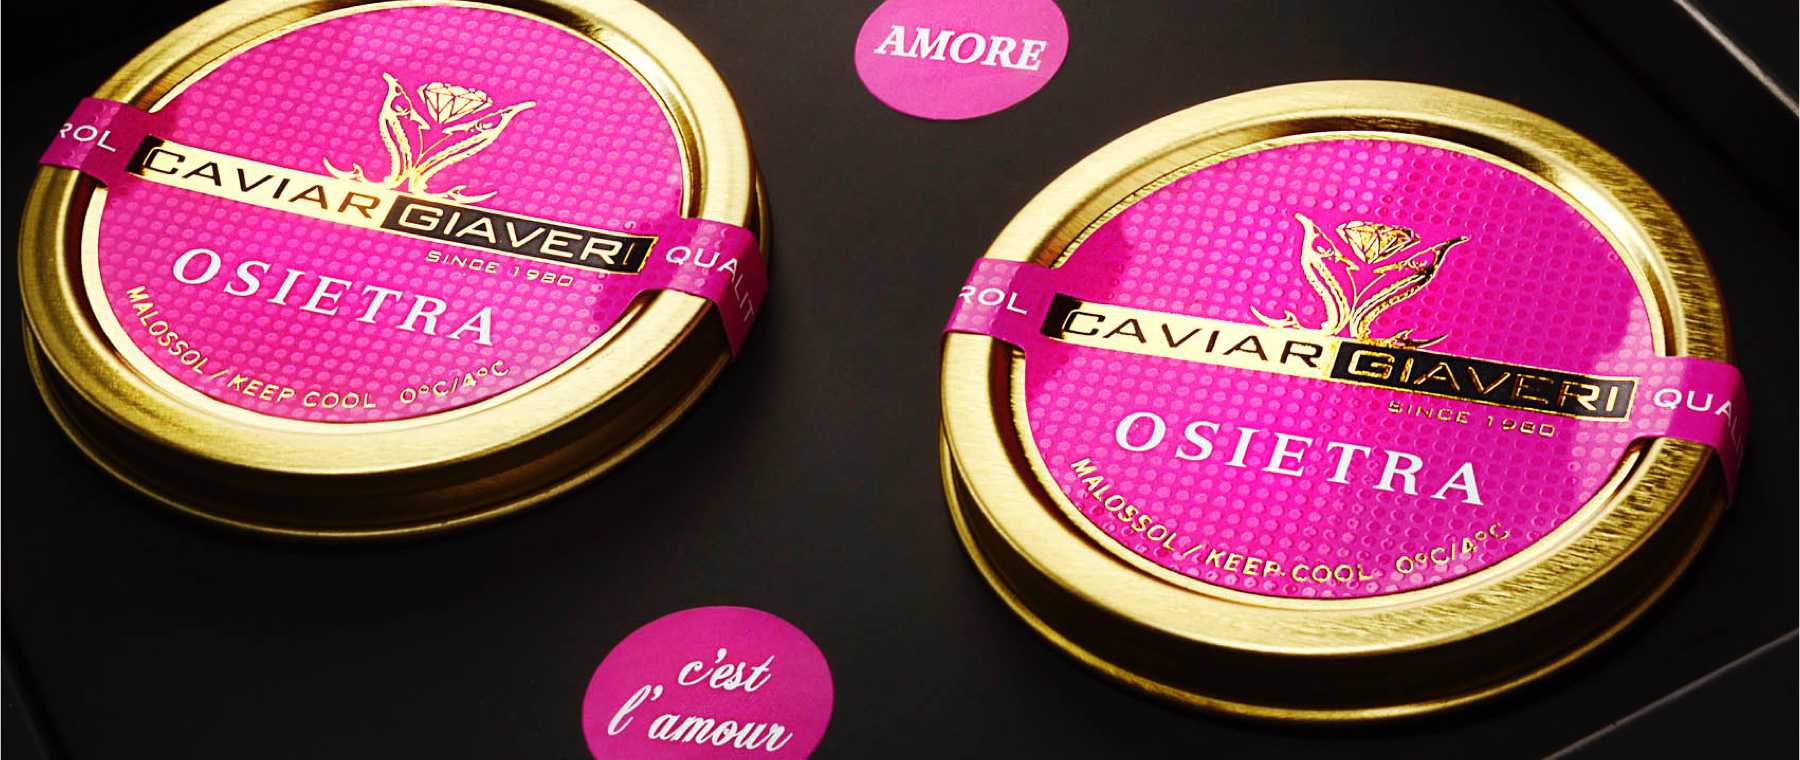 Confezione regalo cest lamour caviar giaveri c